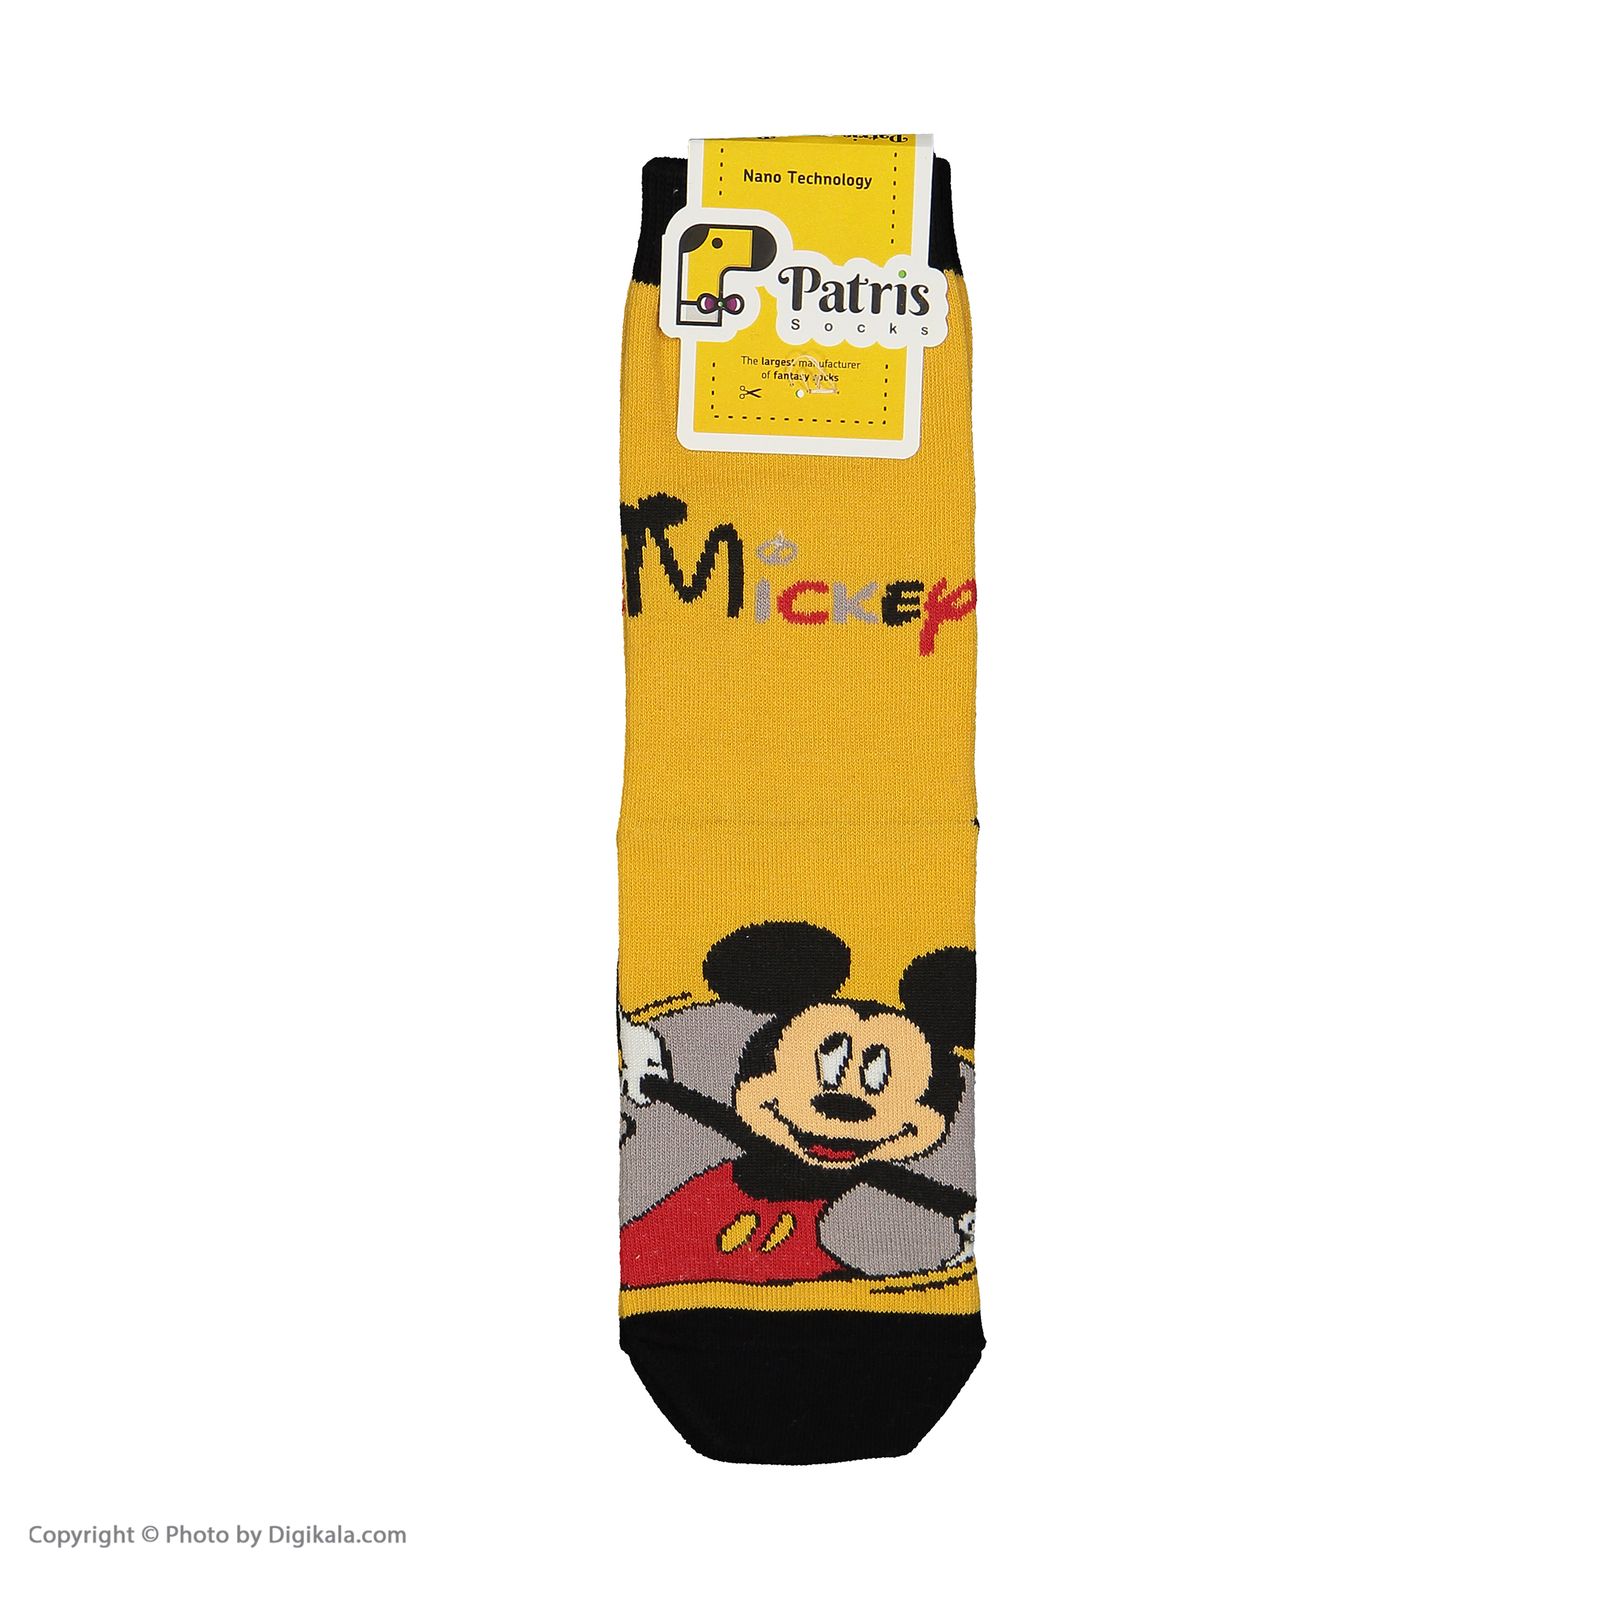 جوراب بچگانه پاتریس طرح میکی ماوس مدل 2271324-15 -  - 5